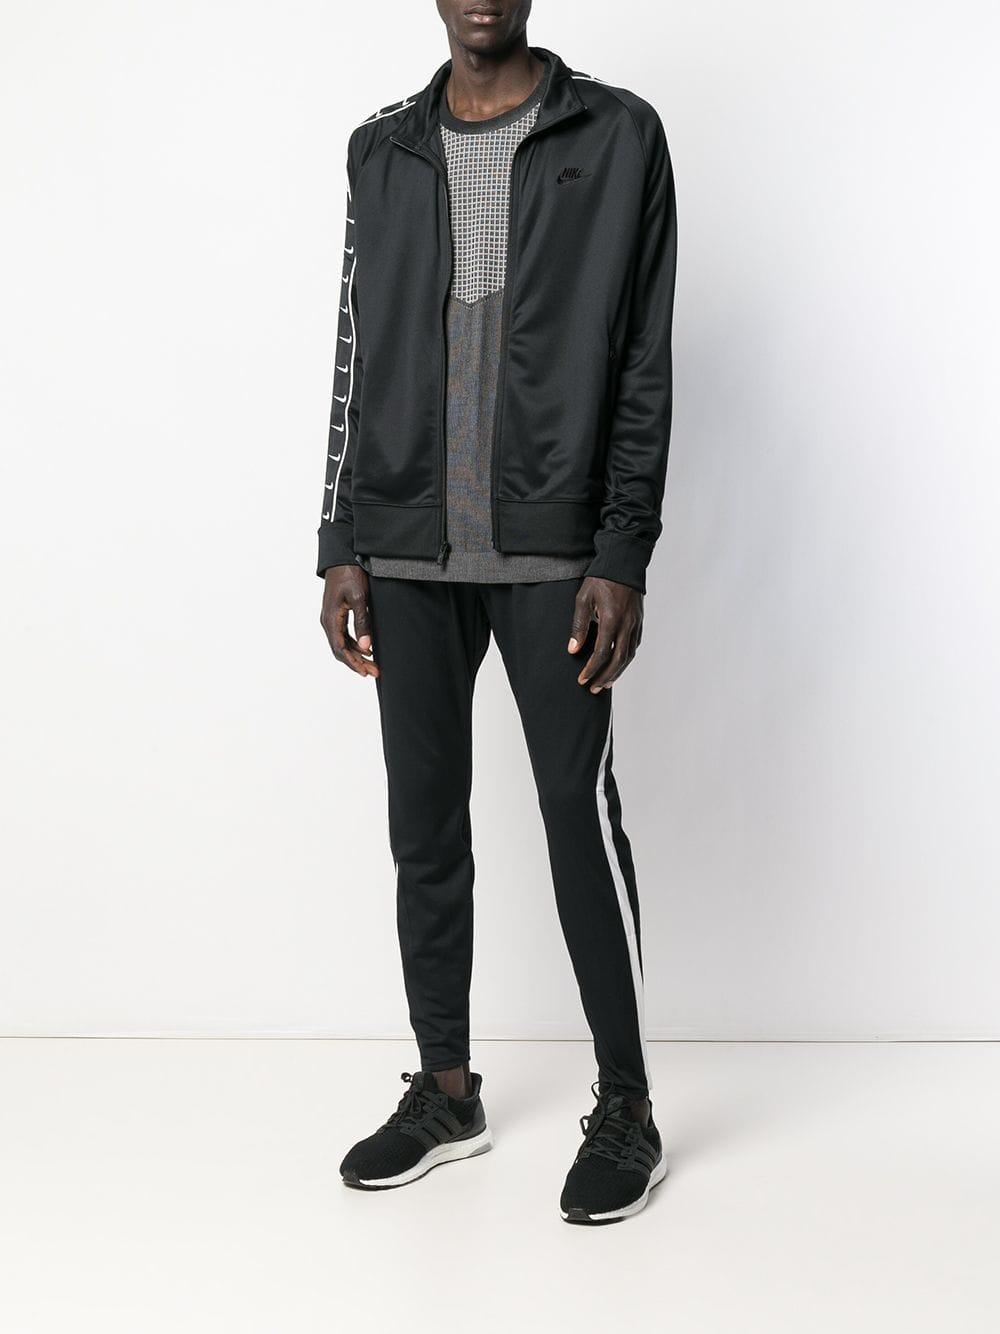 Nike Cotton Logo Stripe Sports Jacket in Black for Men - Lyst